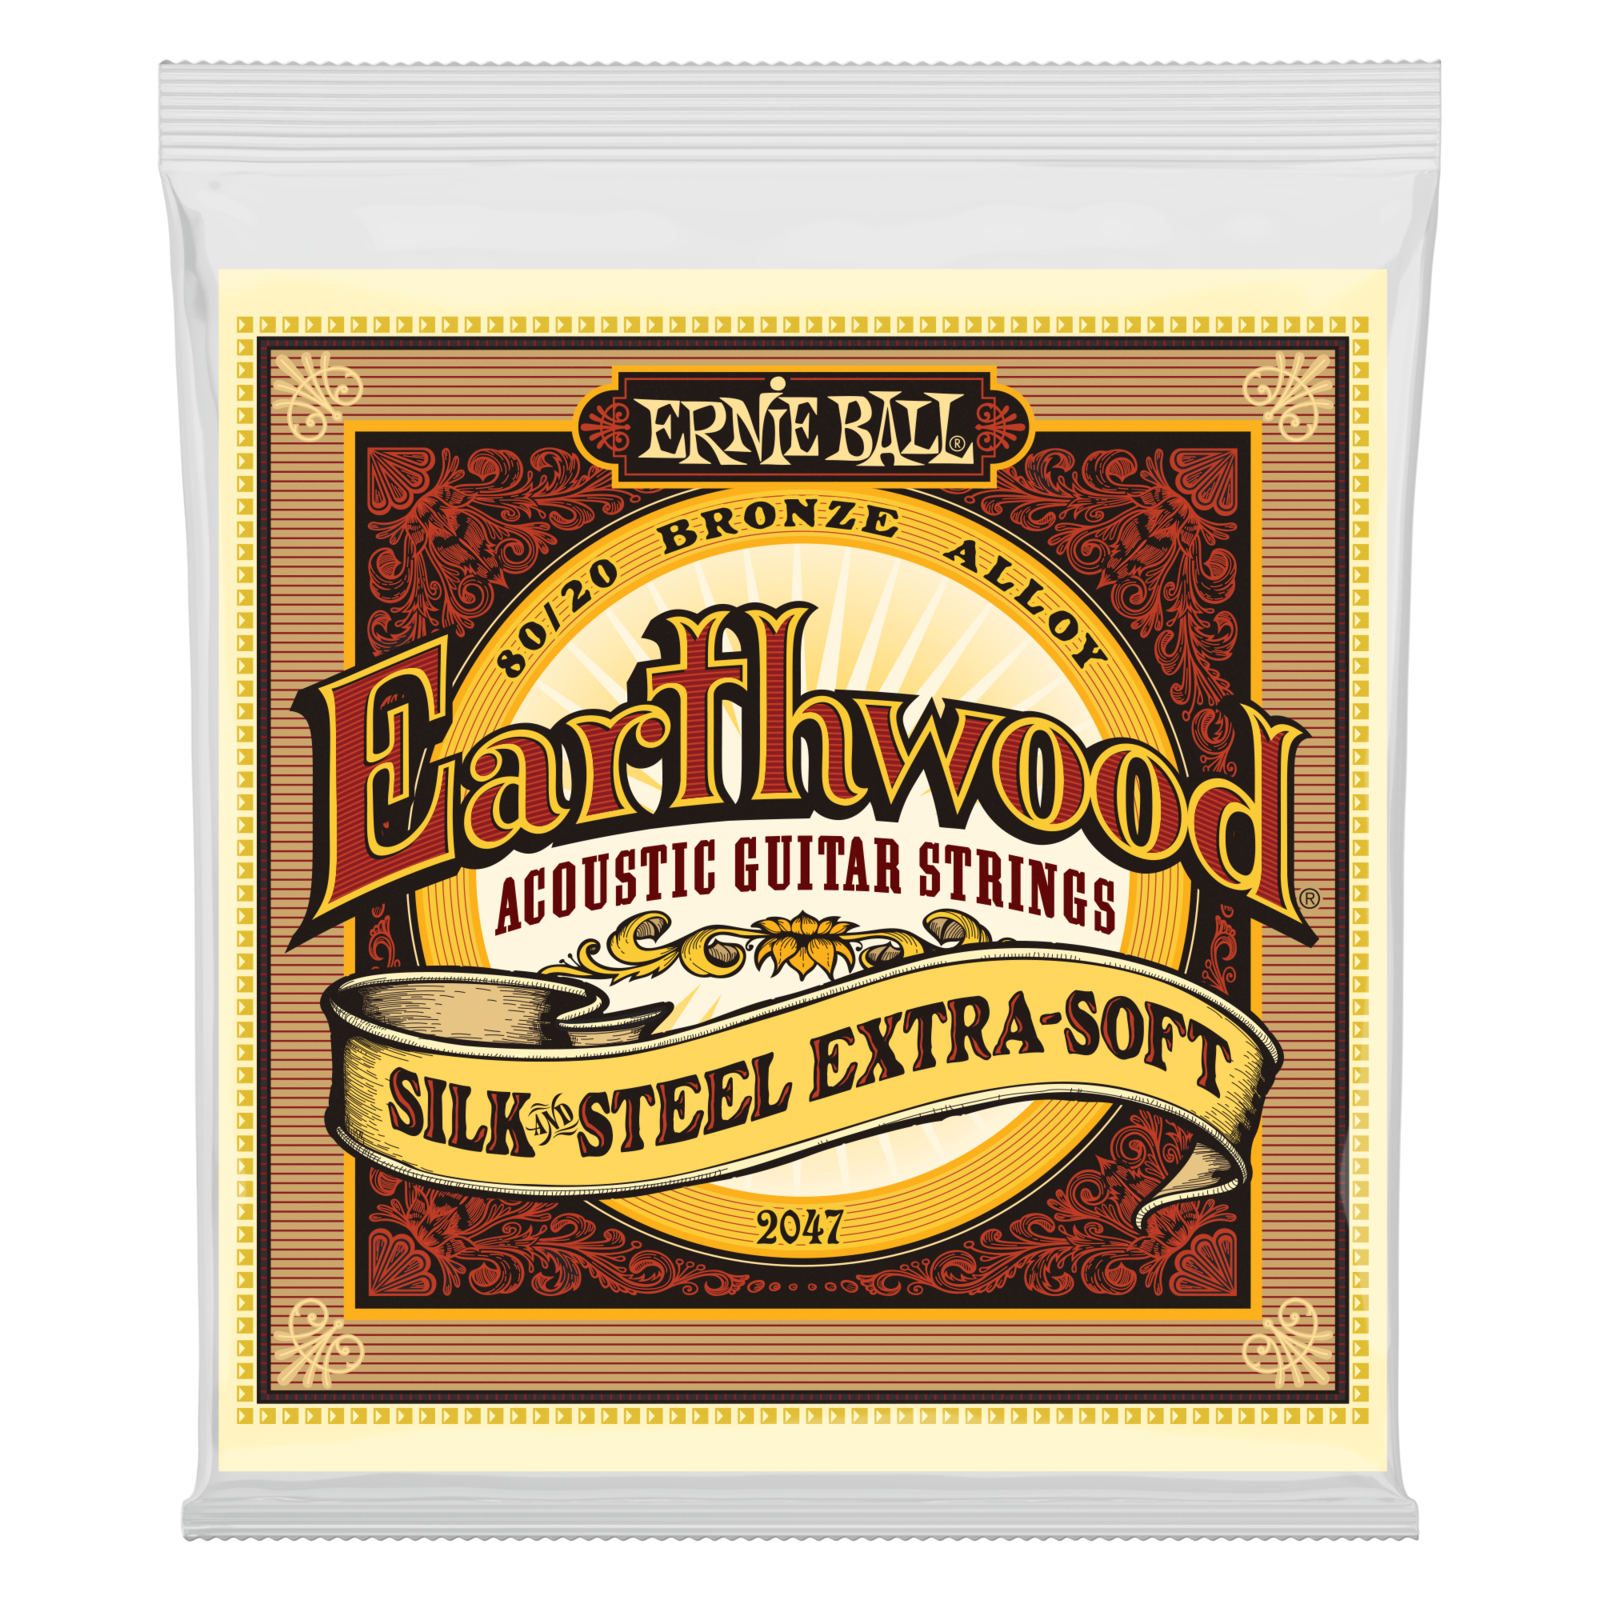 Corde Chitarra Acustica Ernie Ball 2047 Earthwood Silk & Steel